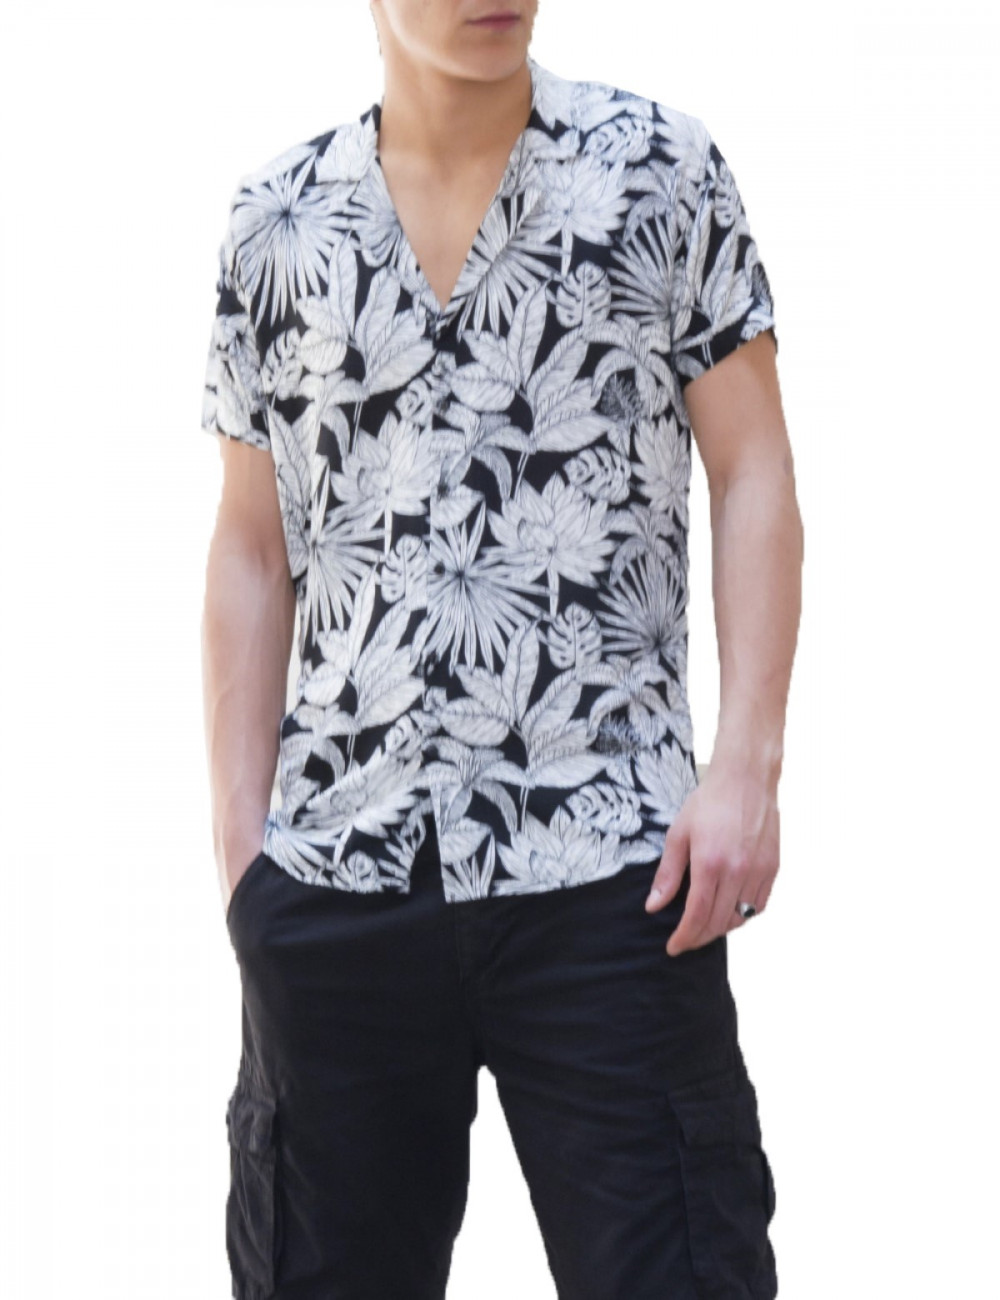 Ανδρικό μαύρο φλοράλ κοντομάνικο πουκάμισο GML38410